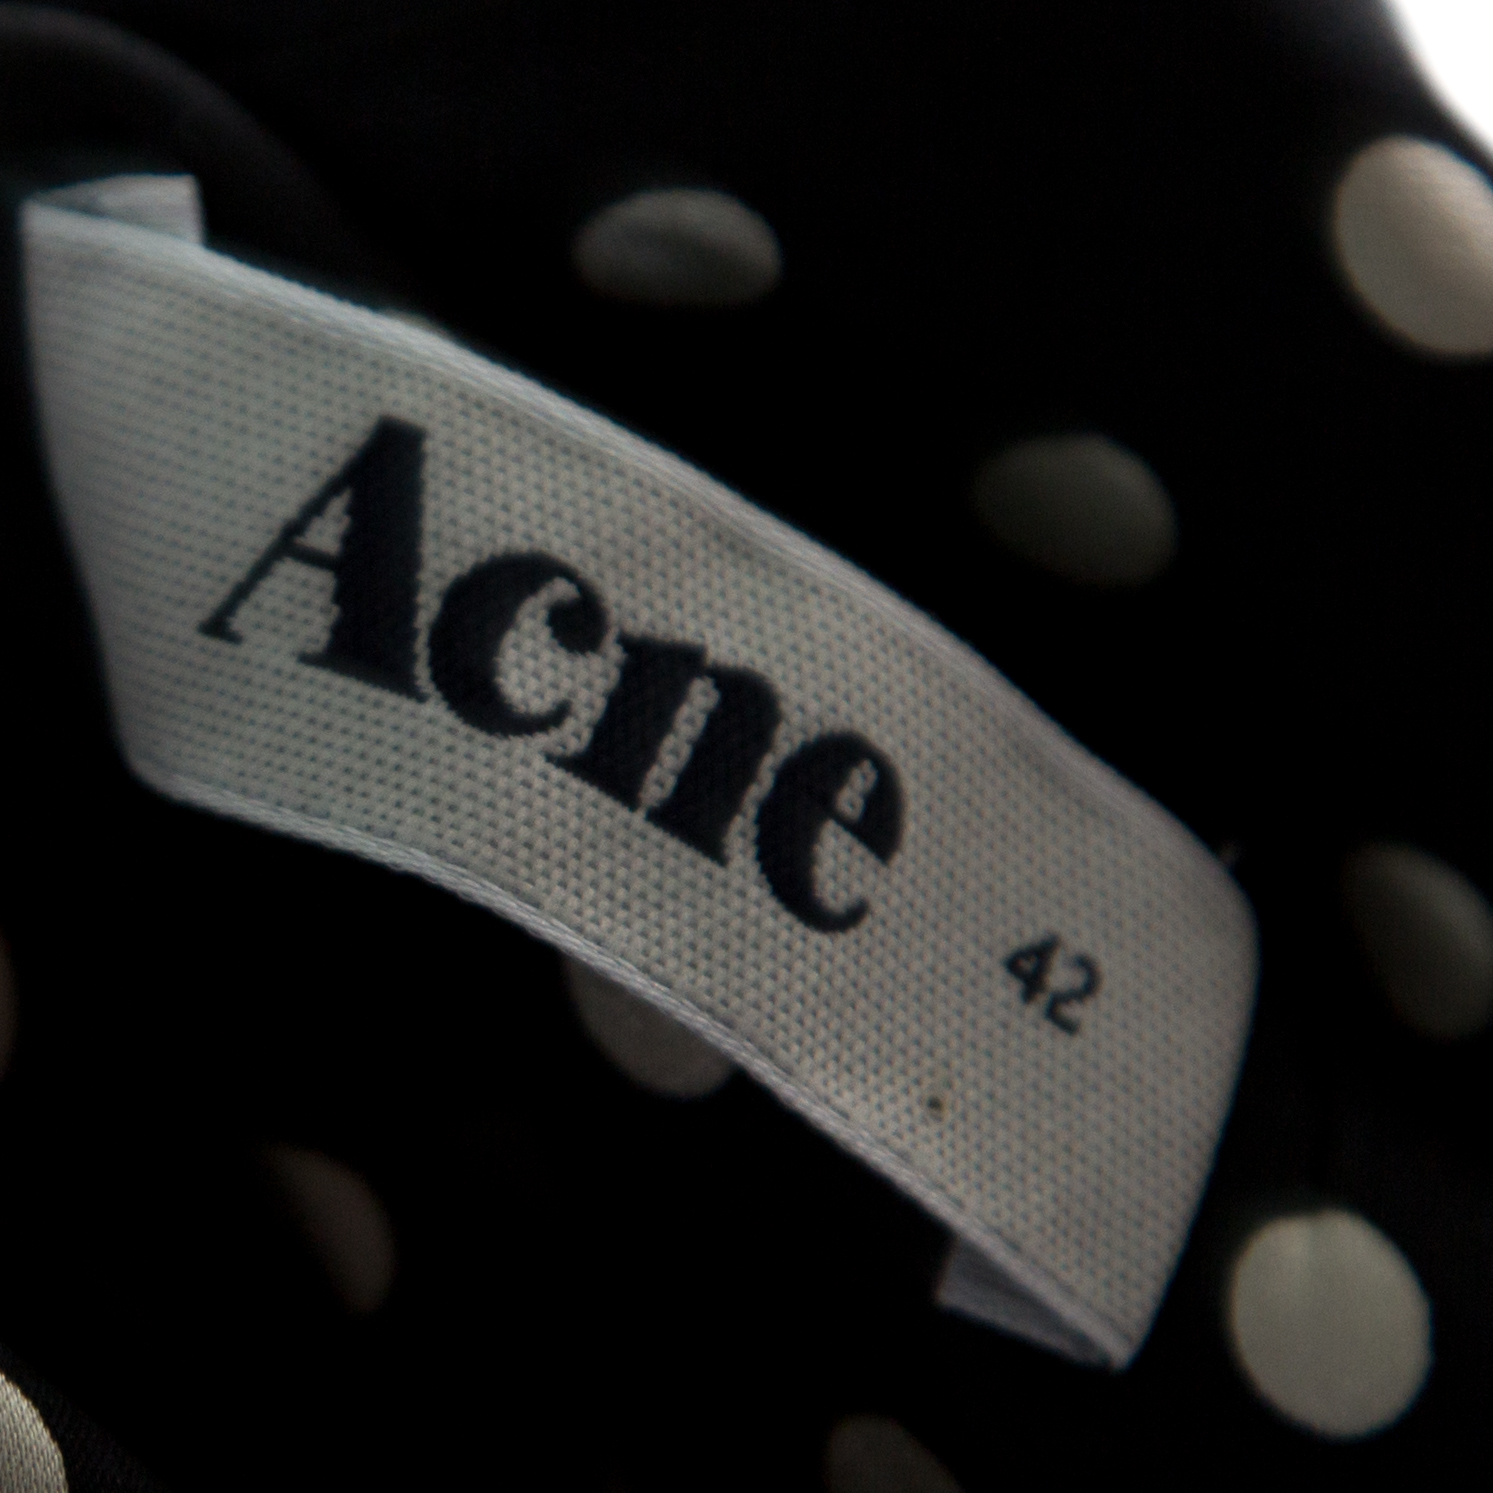 Acne Monochrome Shy Dots And Striped Panel Detail Silk Asymmetric Tank Top L